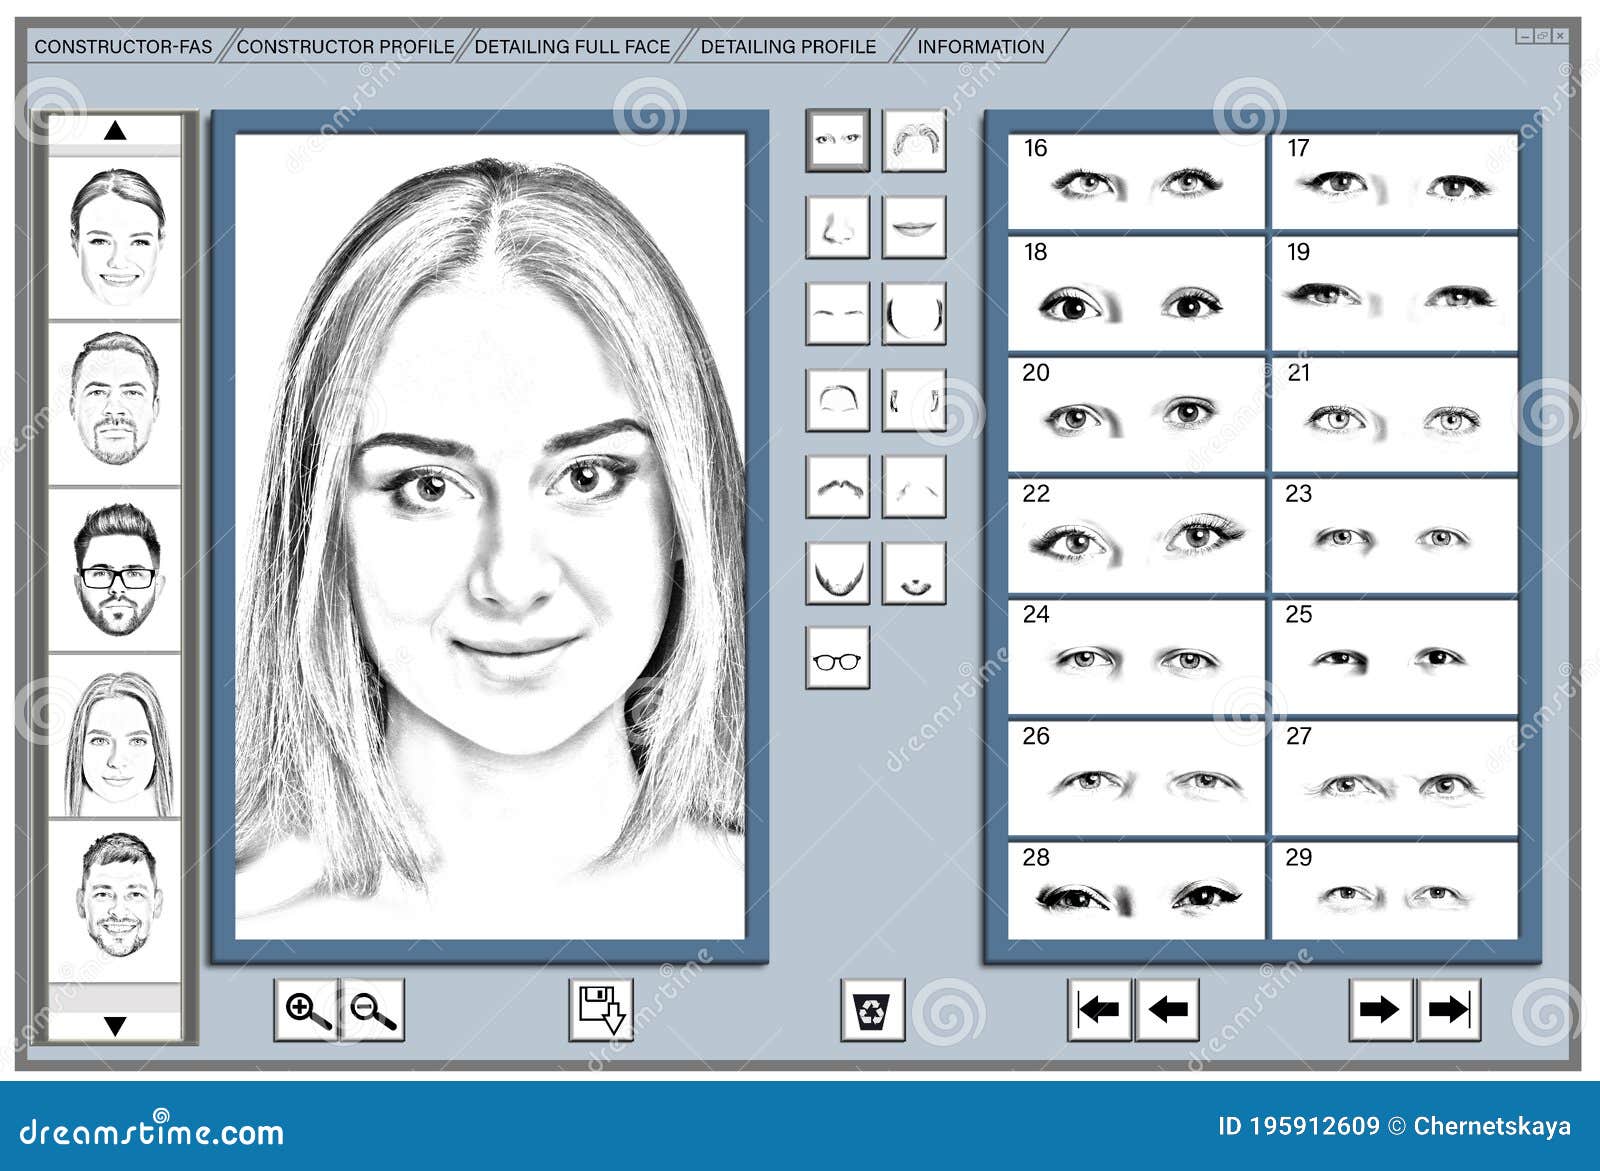 Facial Composite Software Free